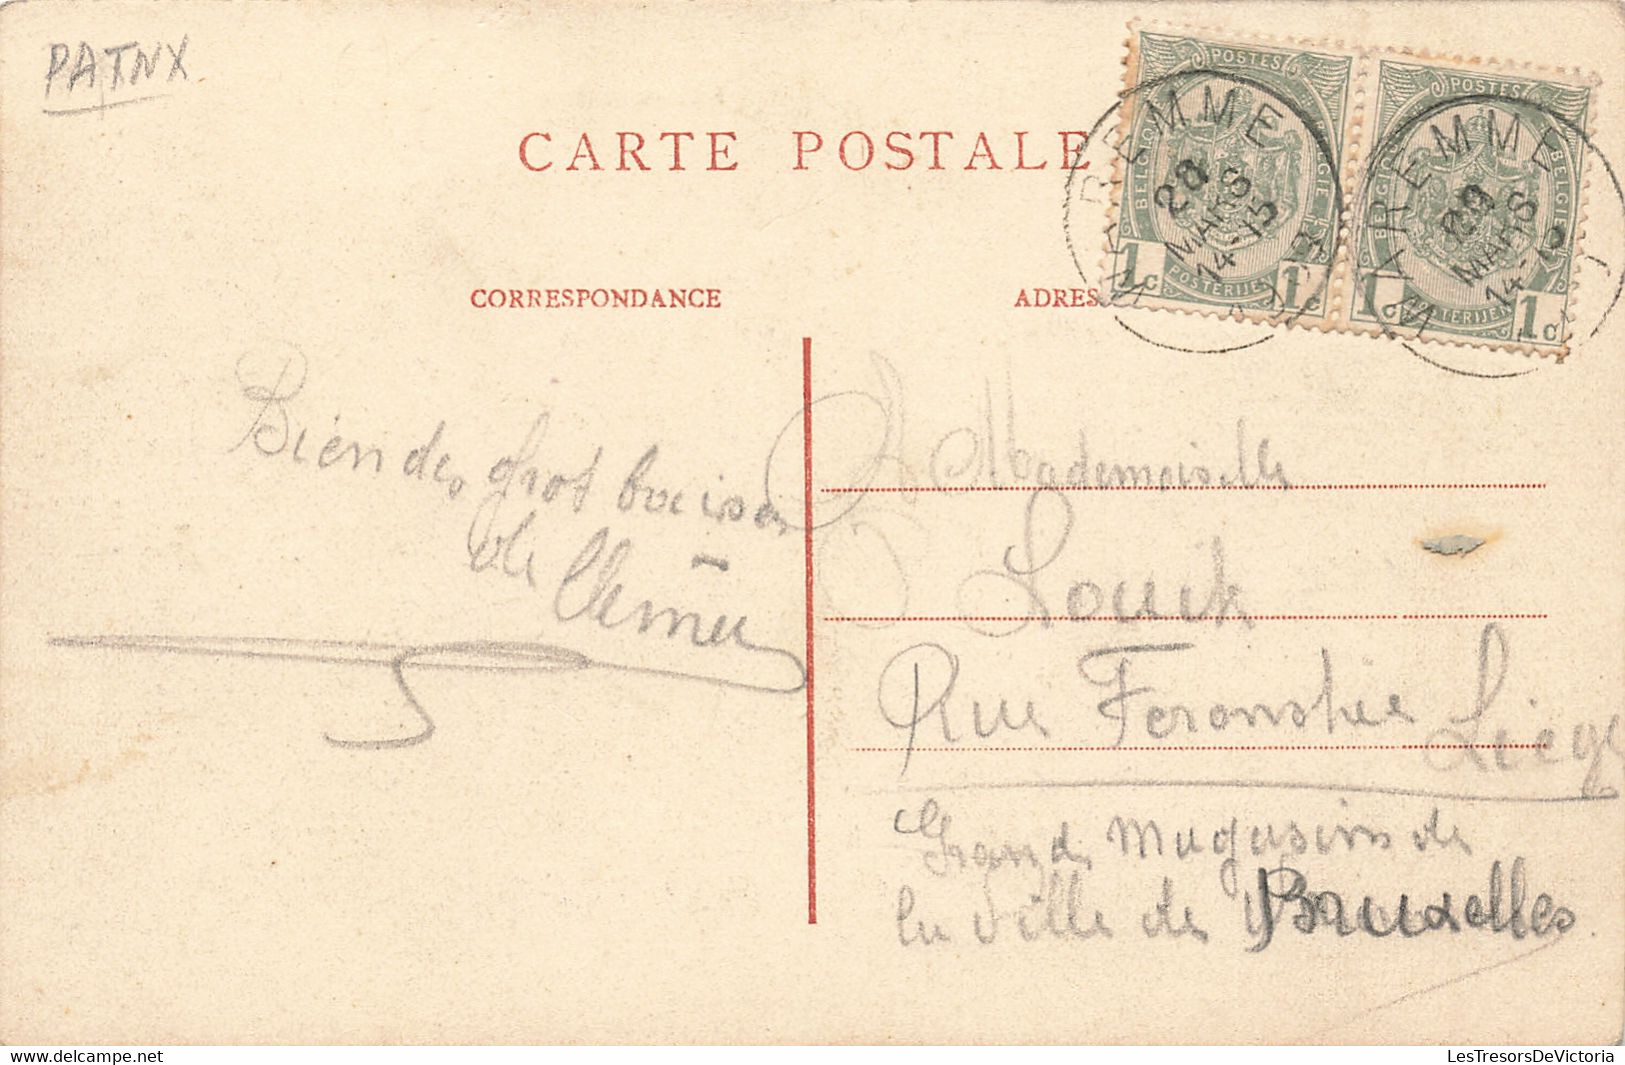 Belgique - Waremme - Justice De Paix - Edit.Jeanne - Animé - Oblitéré Wremme 1909 - Carte Postale Ancienne - Borgworm